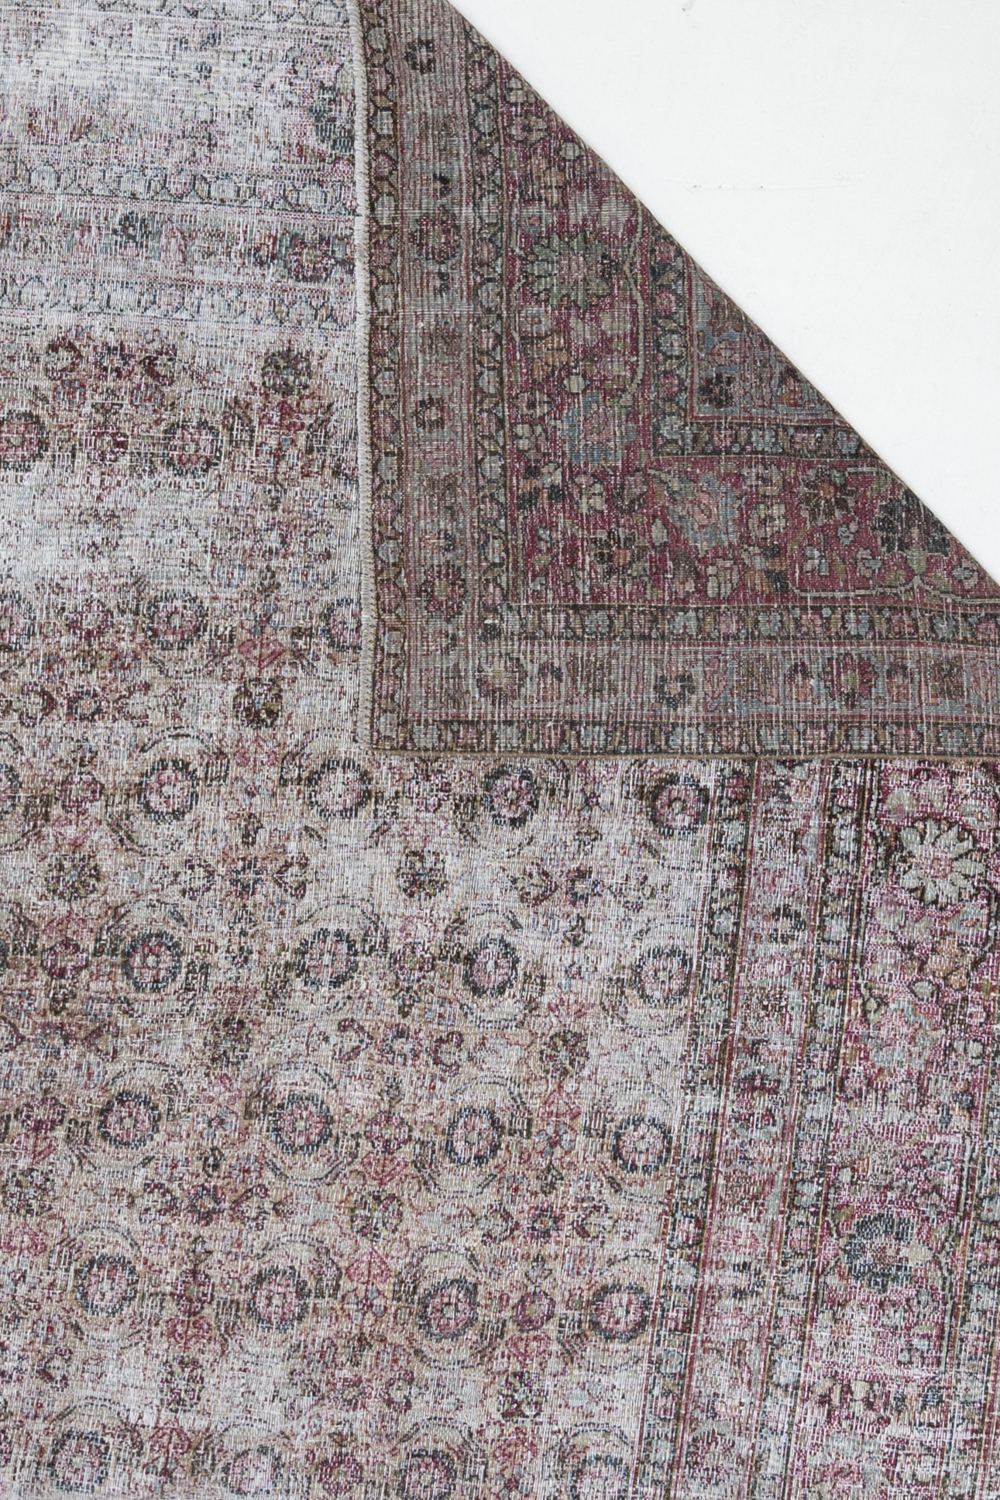 Worn Antique Persian Rug